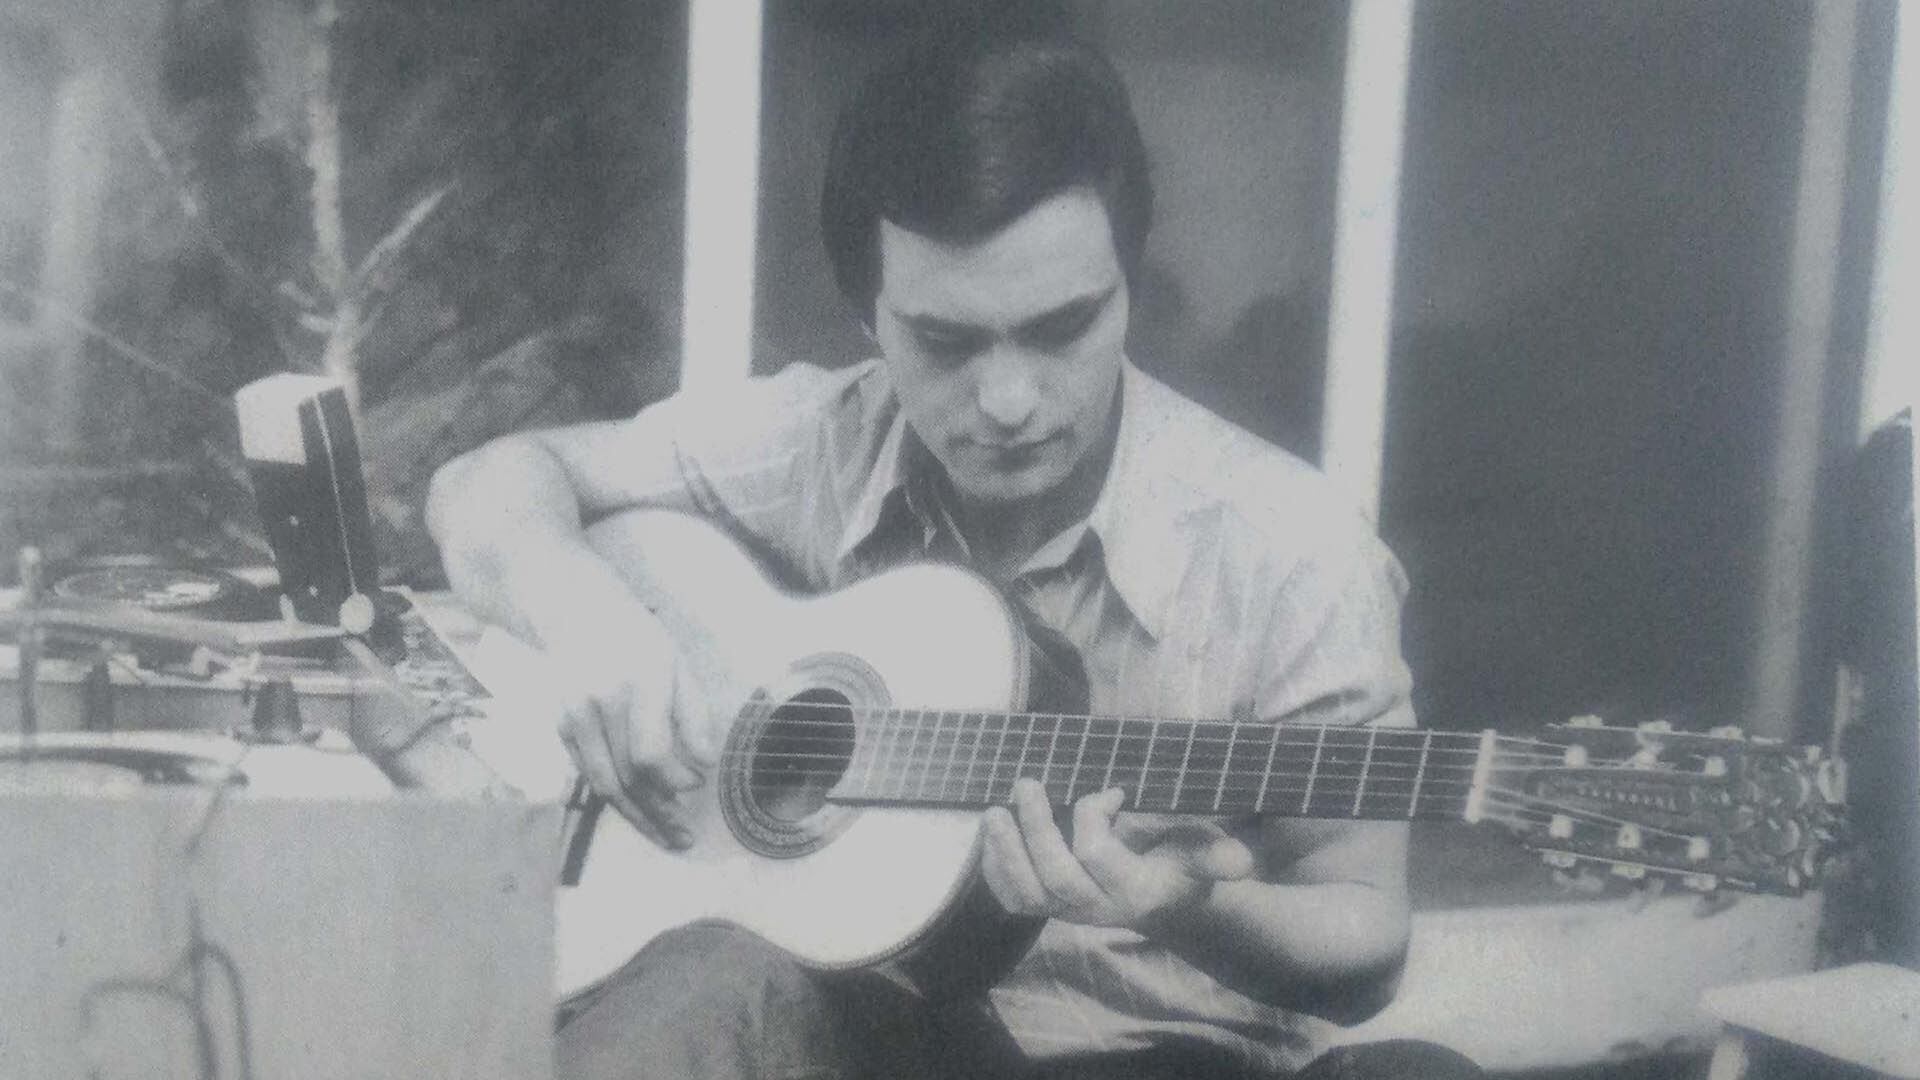 Como cantante, Leonardo Favio fue uno de los grandes ídolos populares de la Argentina en los años 60 y 70, y sus canciones vendieron millones de copias